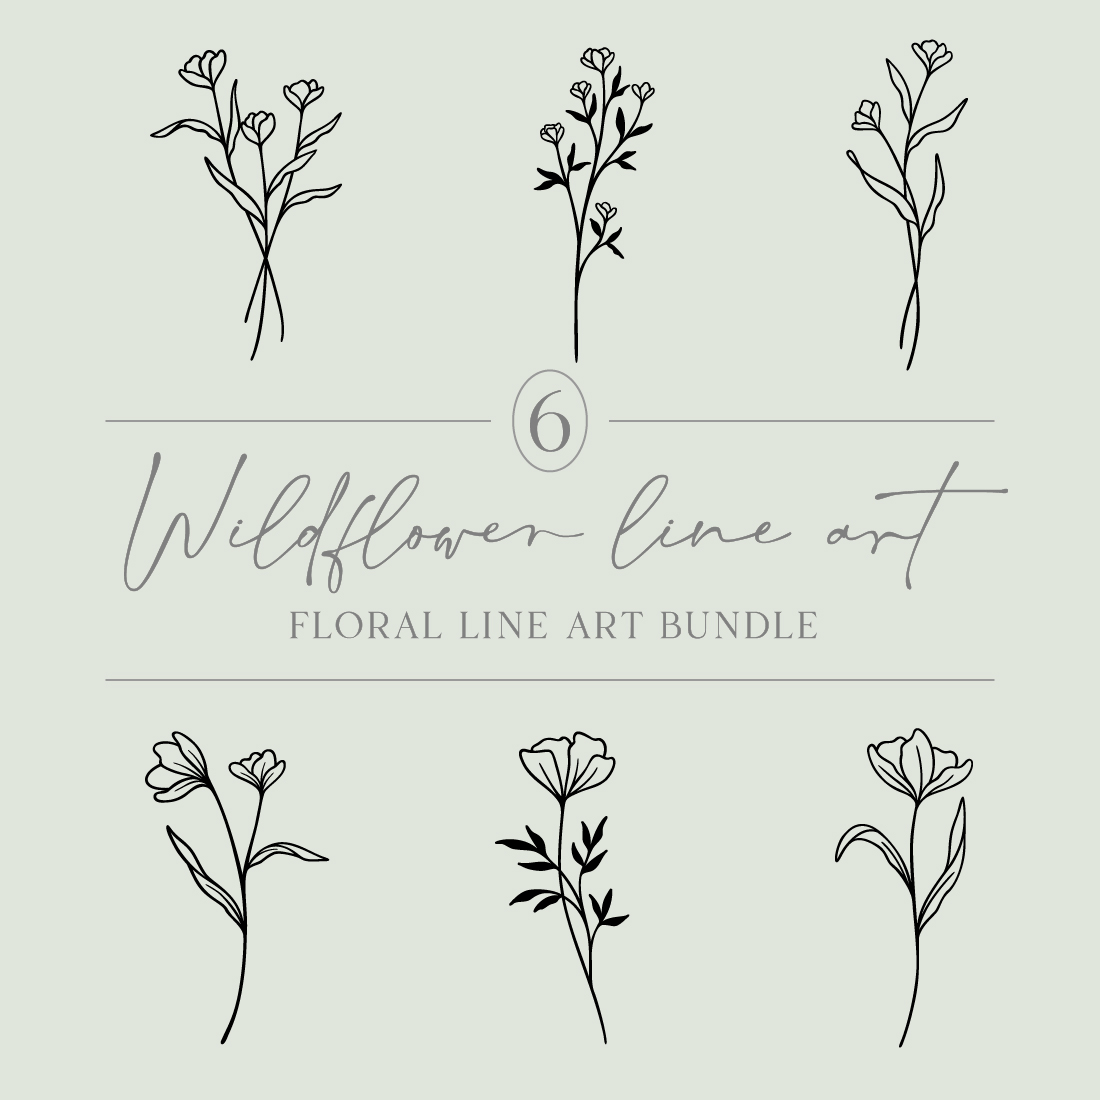 Flower Line Art Bundle | 6 Elegant Wildflowers | Botanical Floral Vector Illustration Set | Leafy Garden Plant Designs cover image.